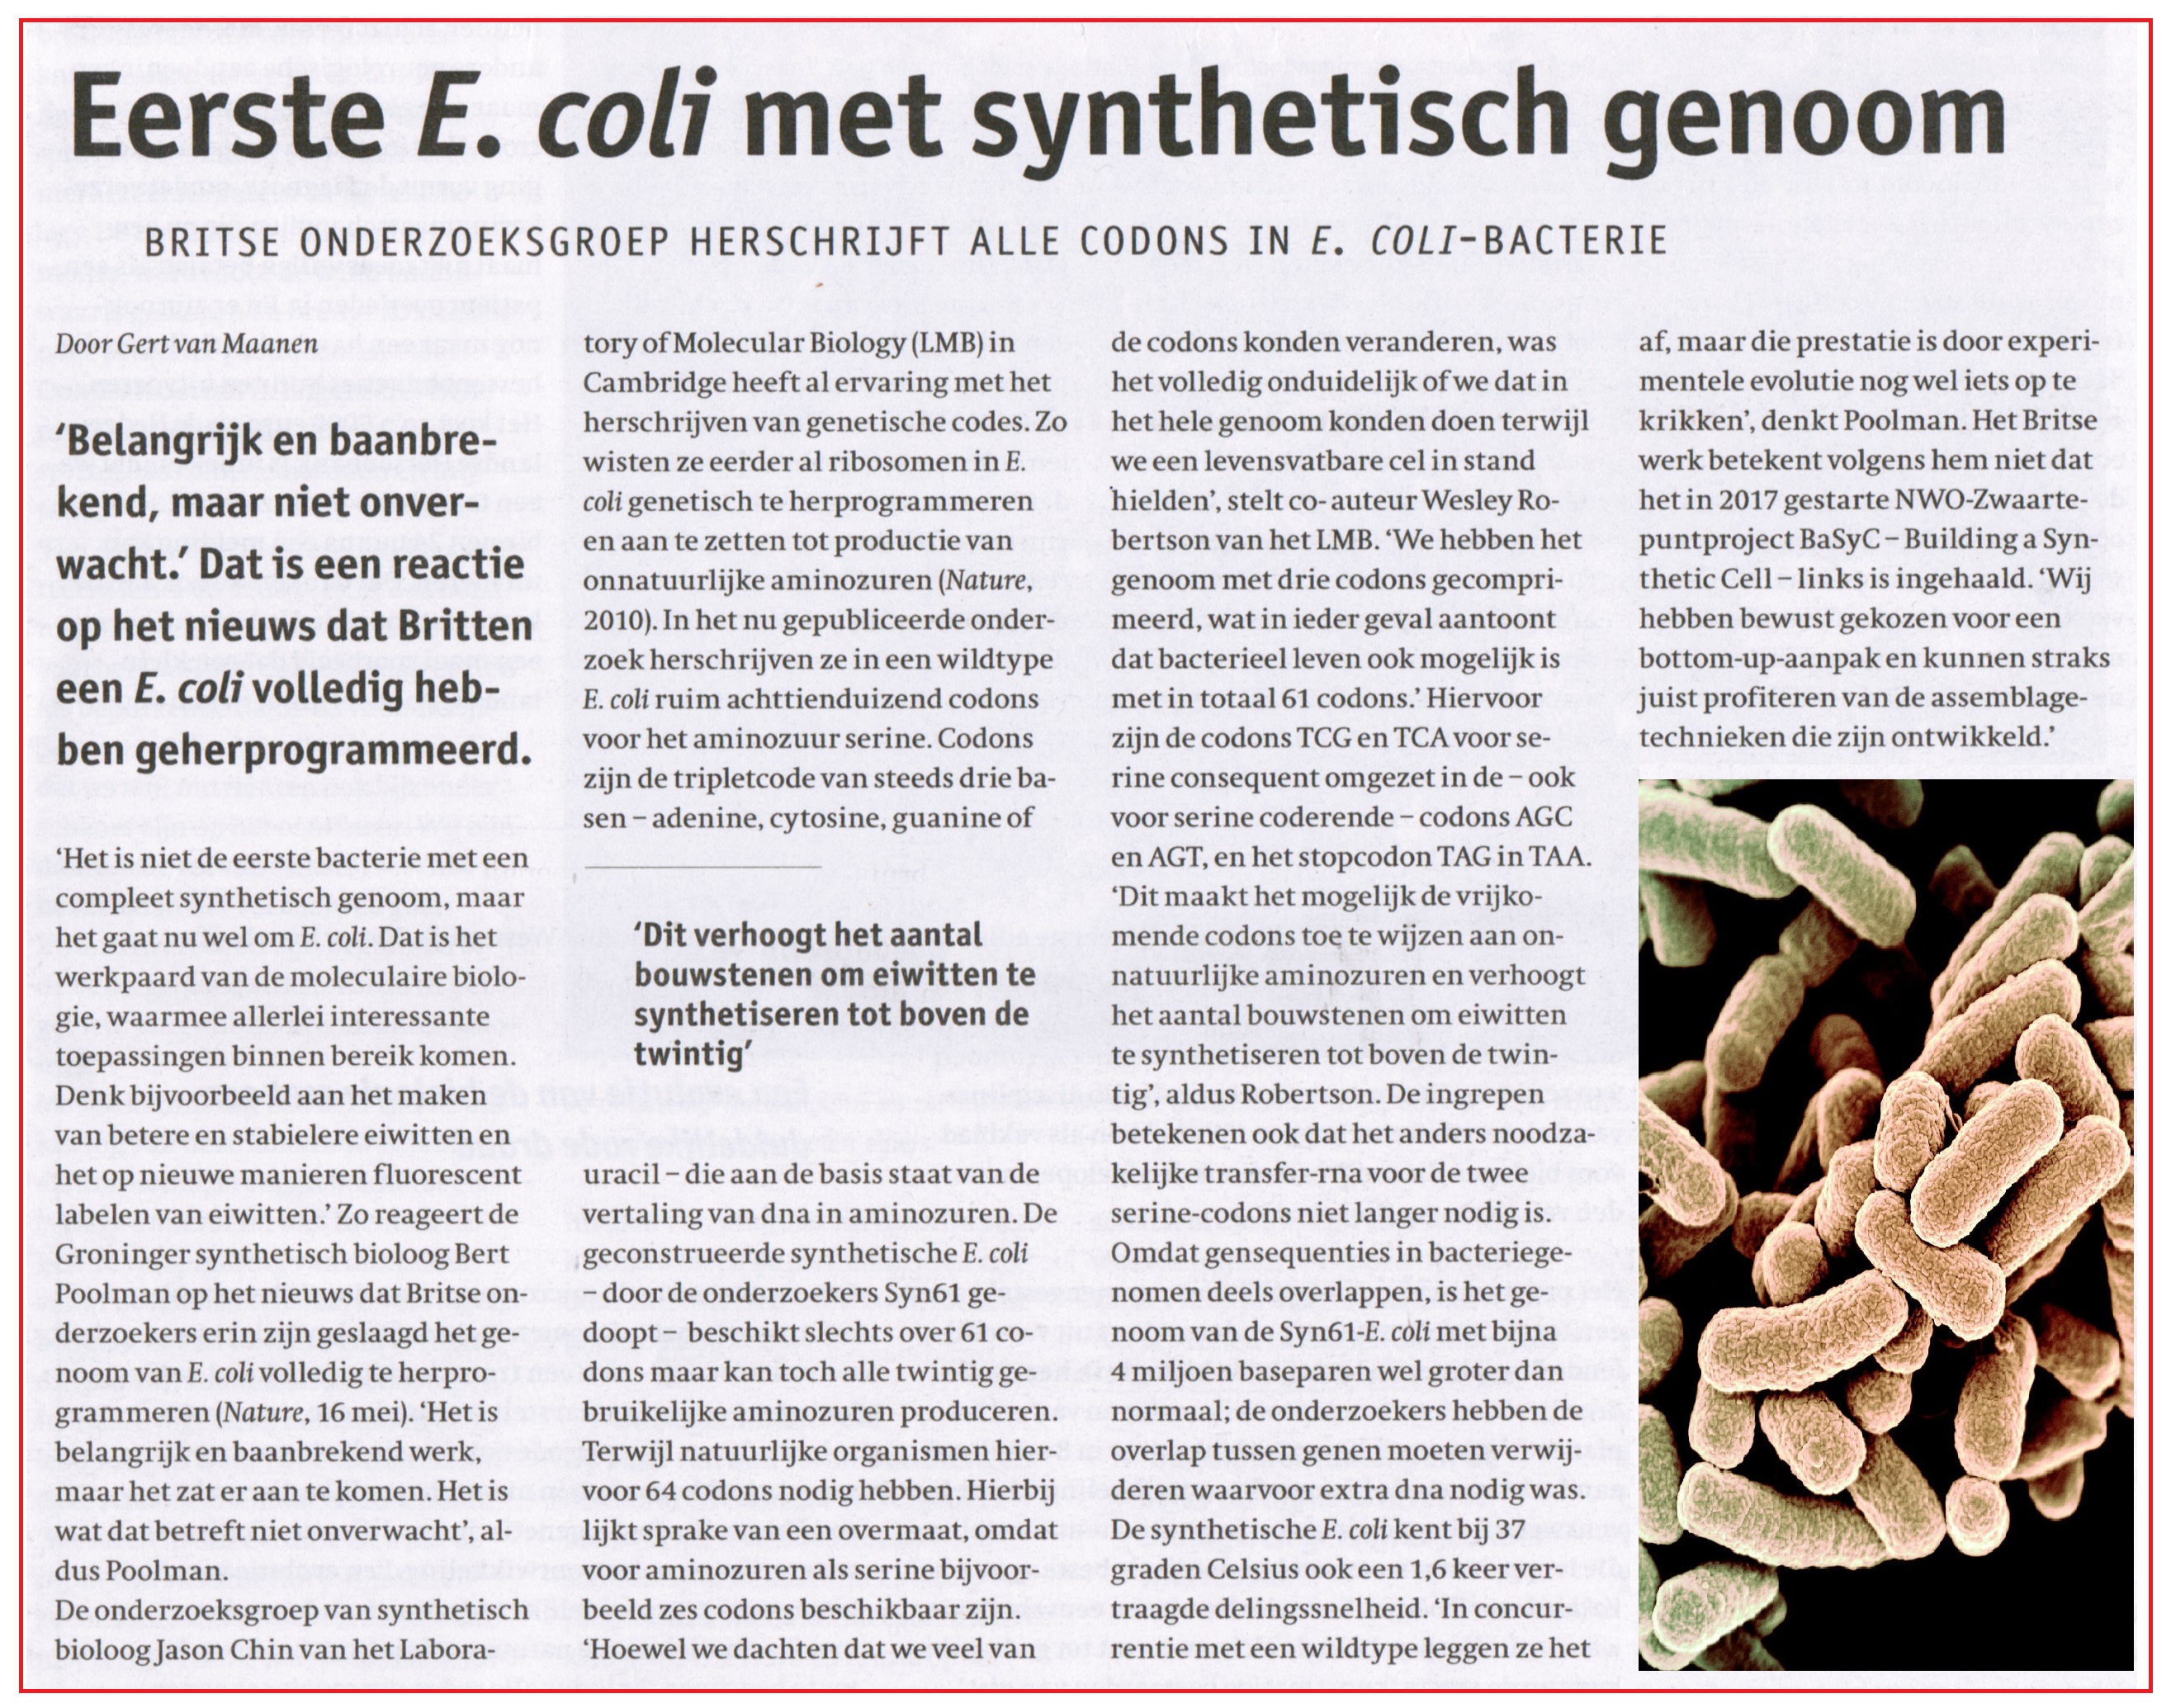 Eerste E coli met synthetisch genoom